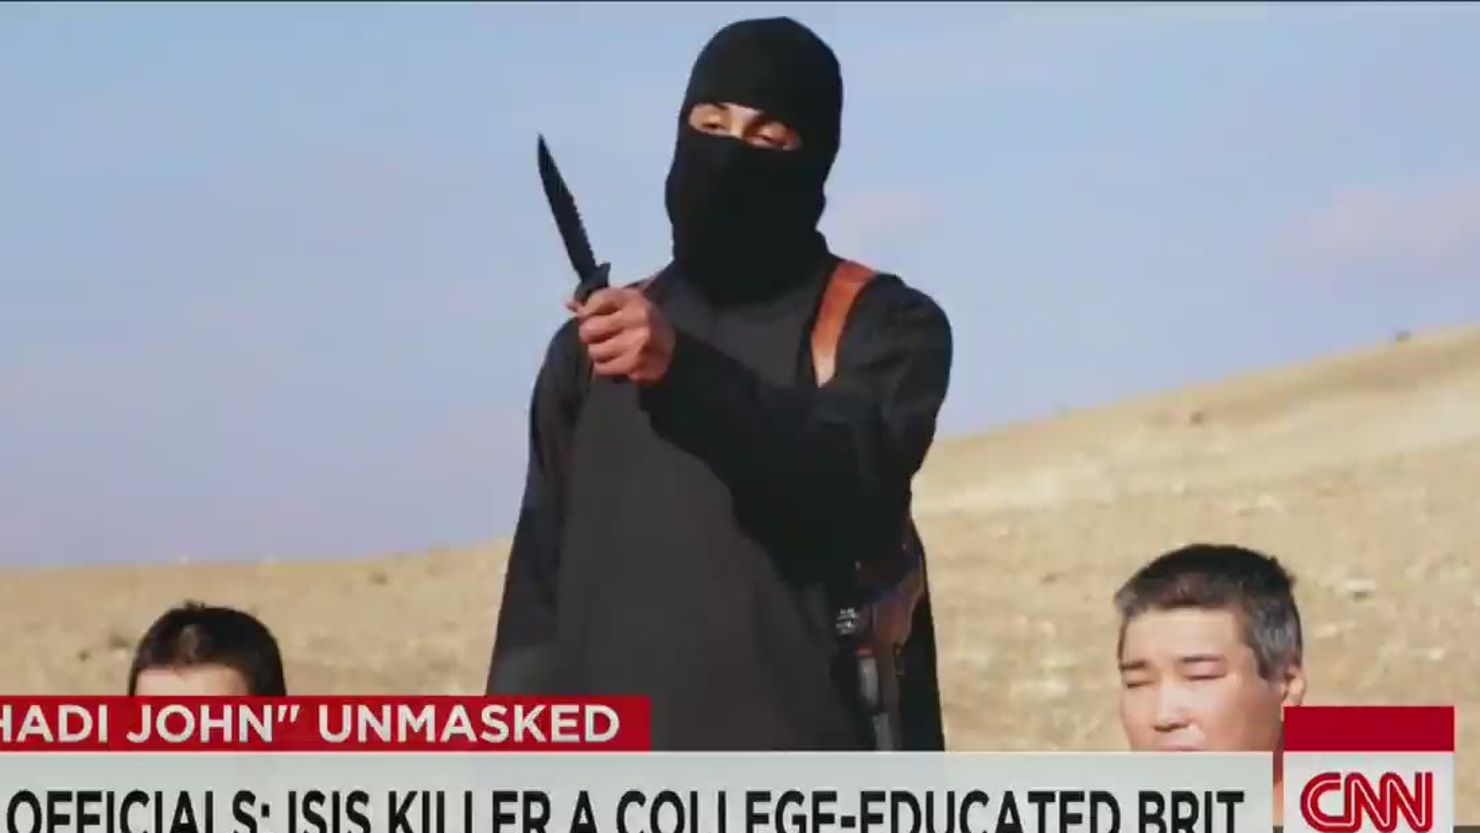 "Jihadi John" of ISIS is identified